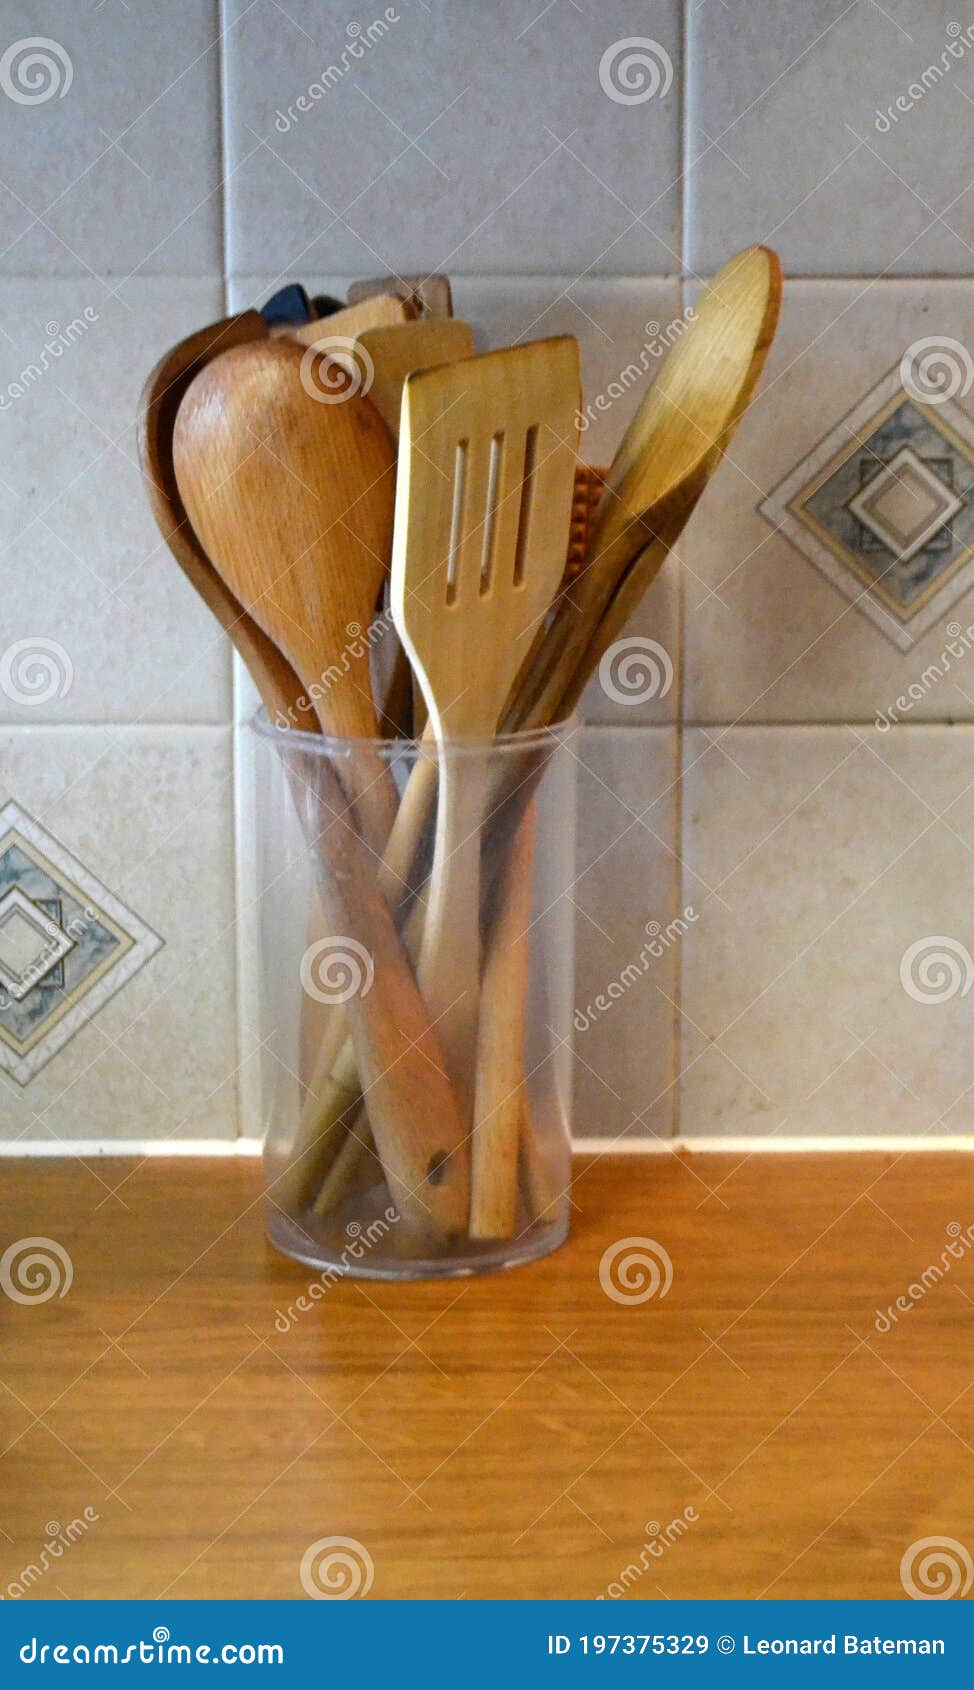 Wooden kitchen utensils stock image. Image of tenderiser - 197375329